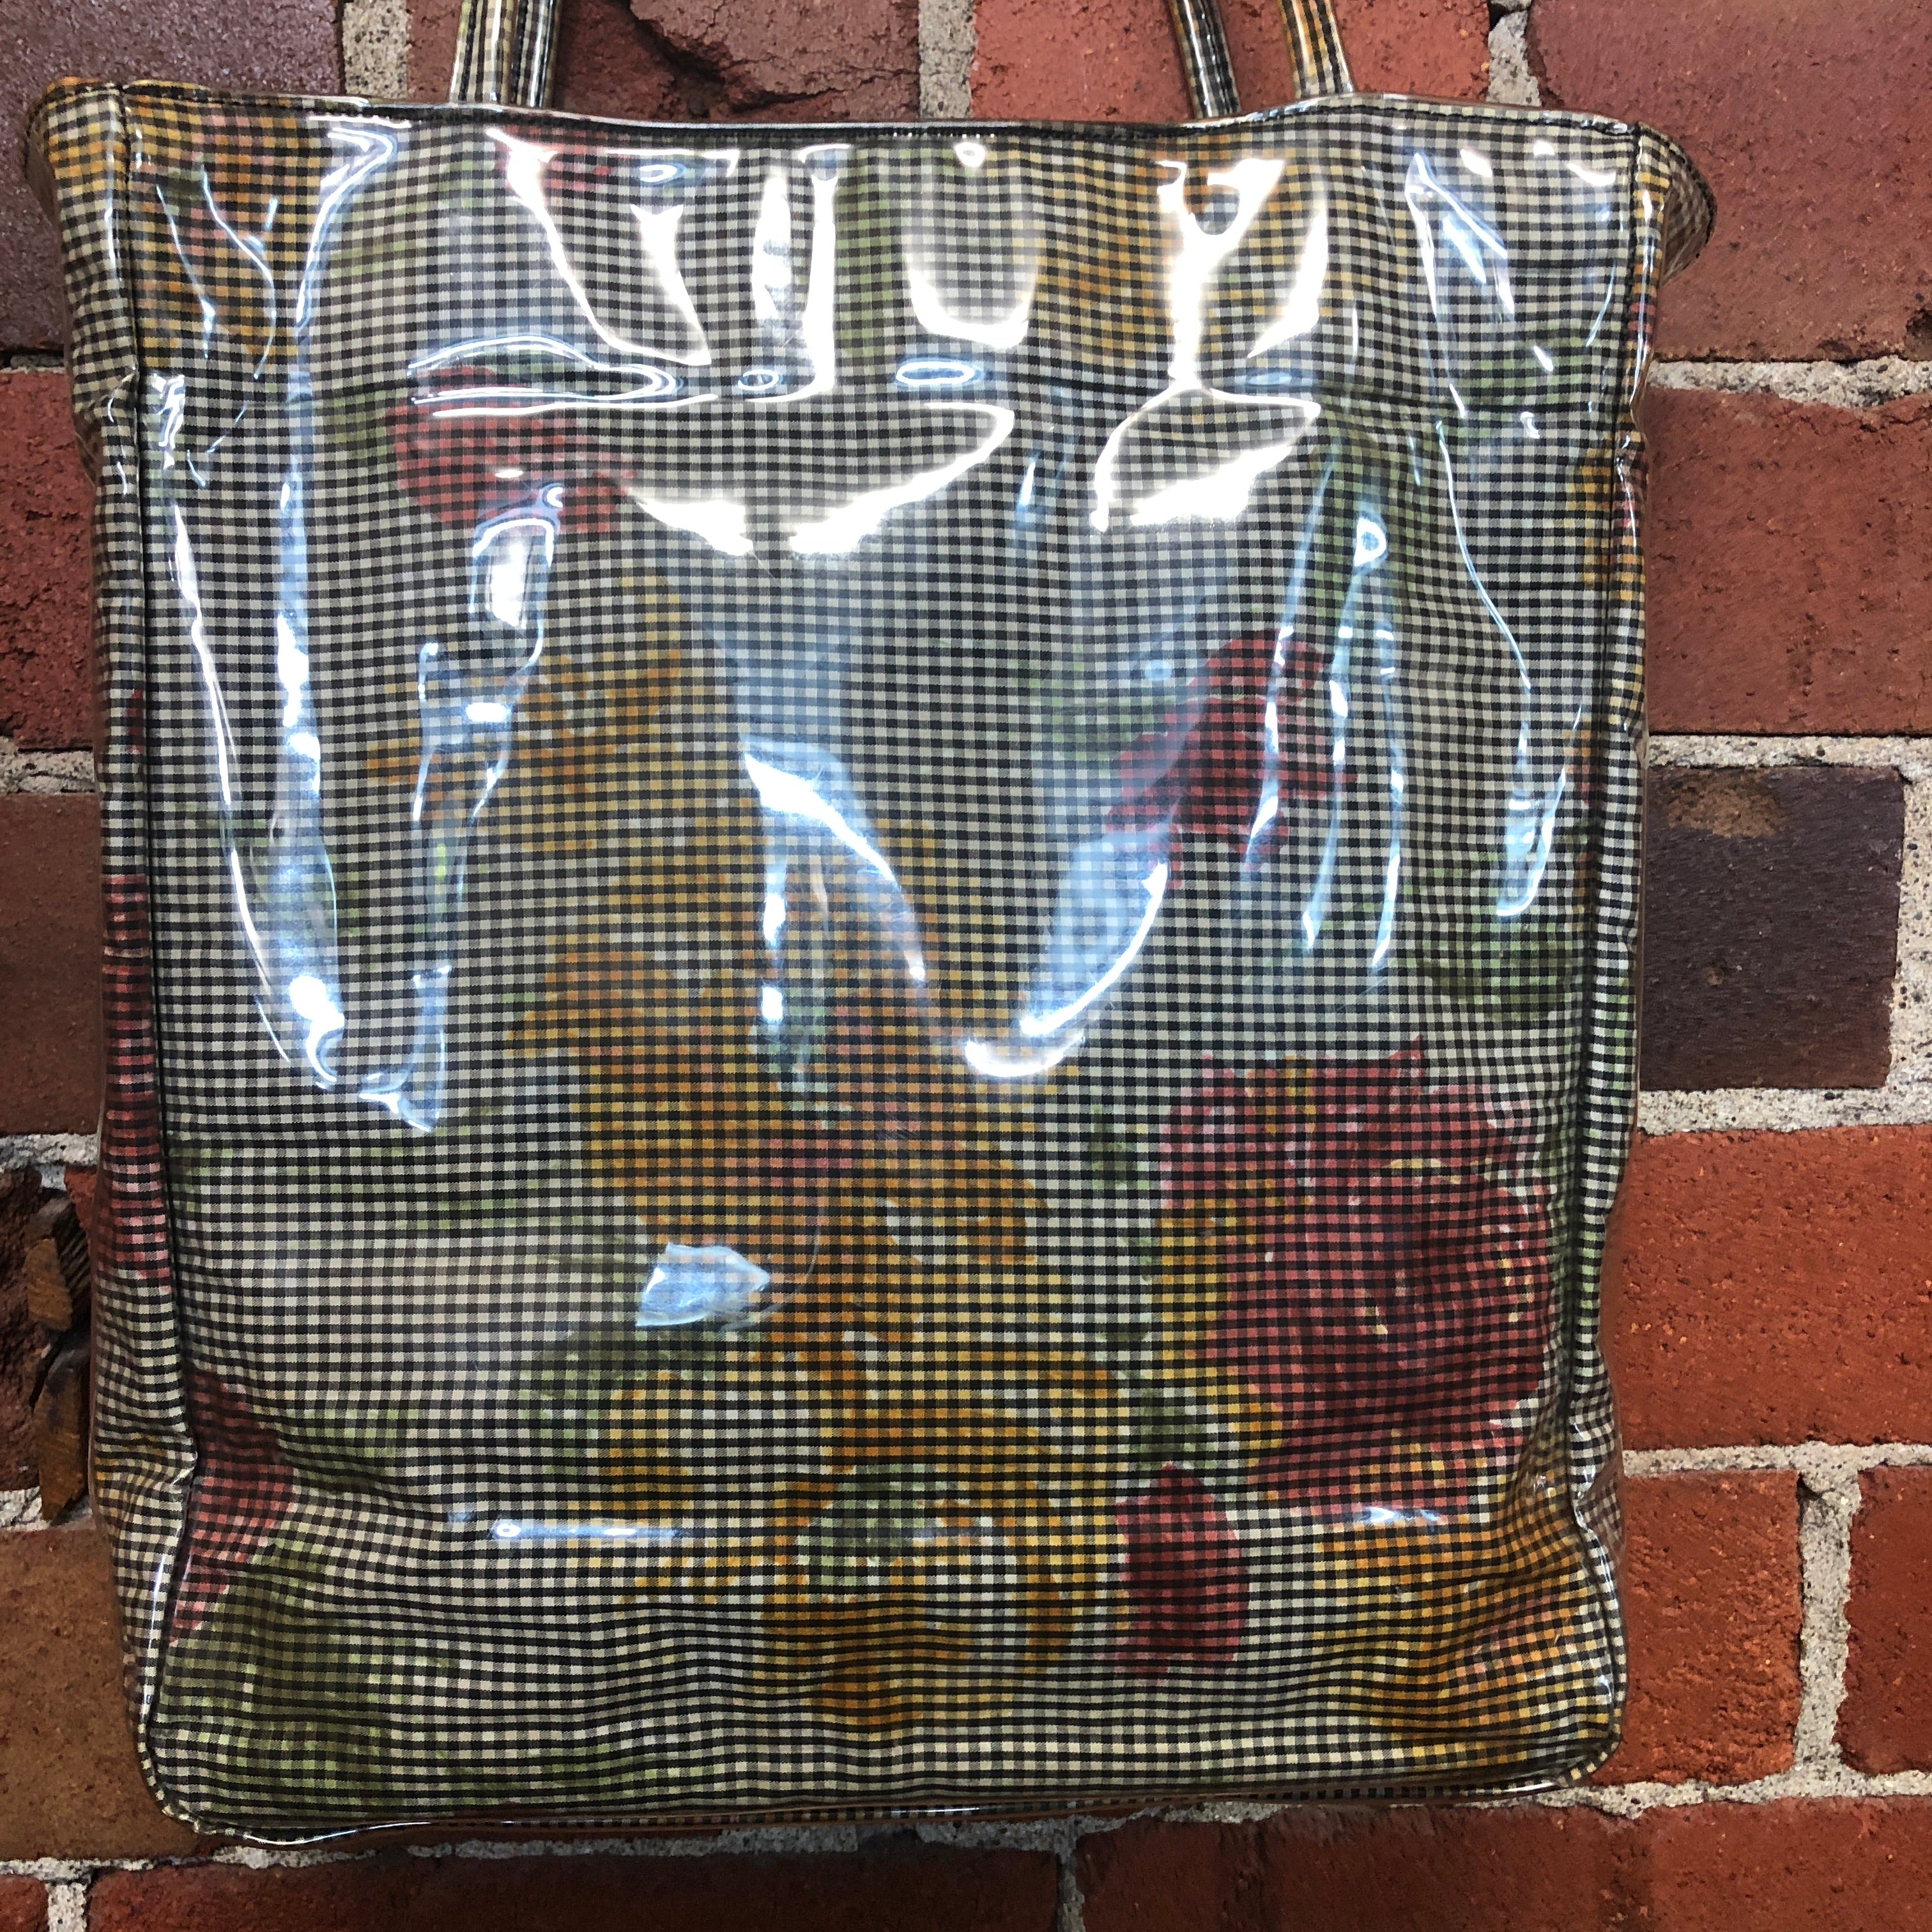 COMME DES GARCONS plastic coated gingham floral bag